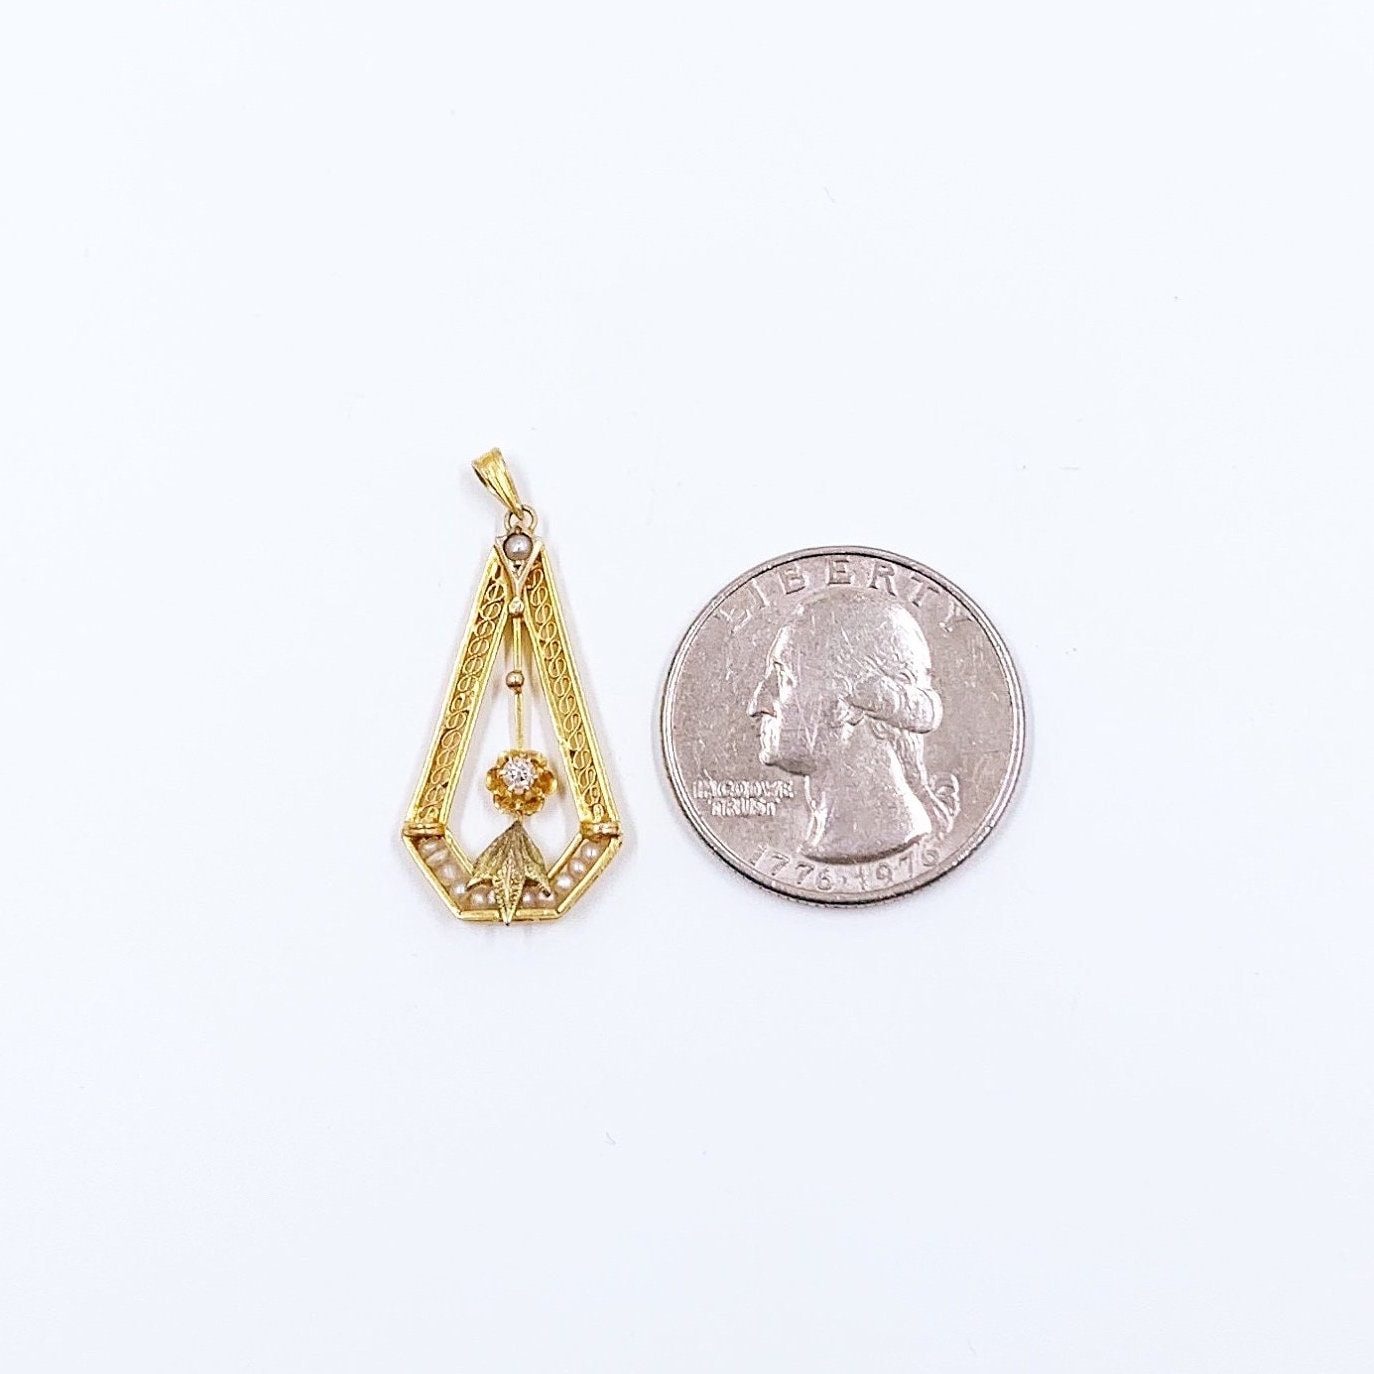 Antique 10K Seed Pearl and Diamond Filigree Lavalier Pendant